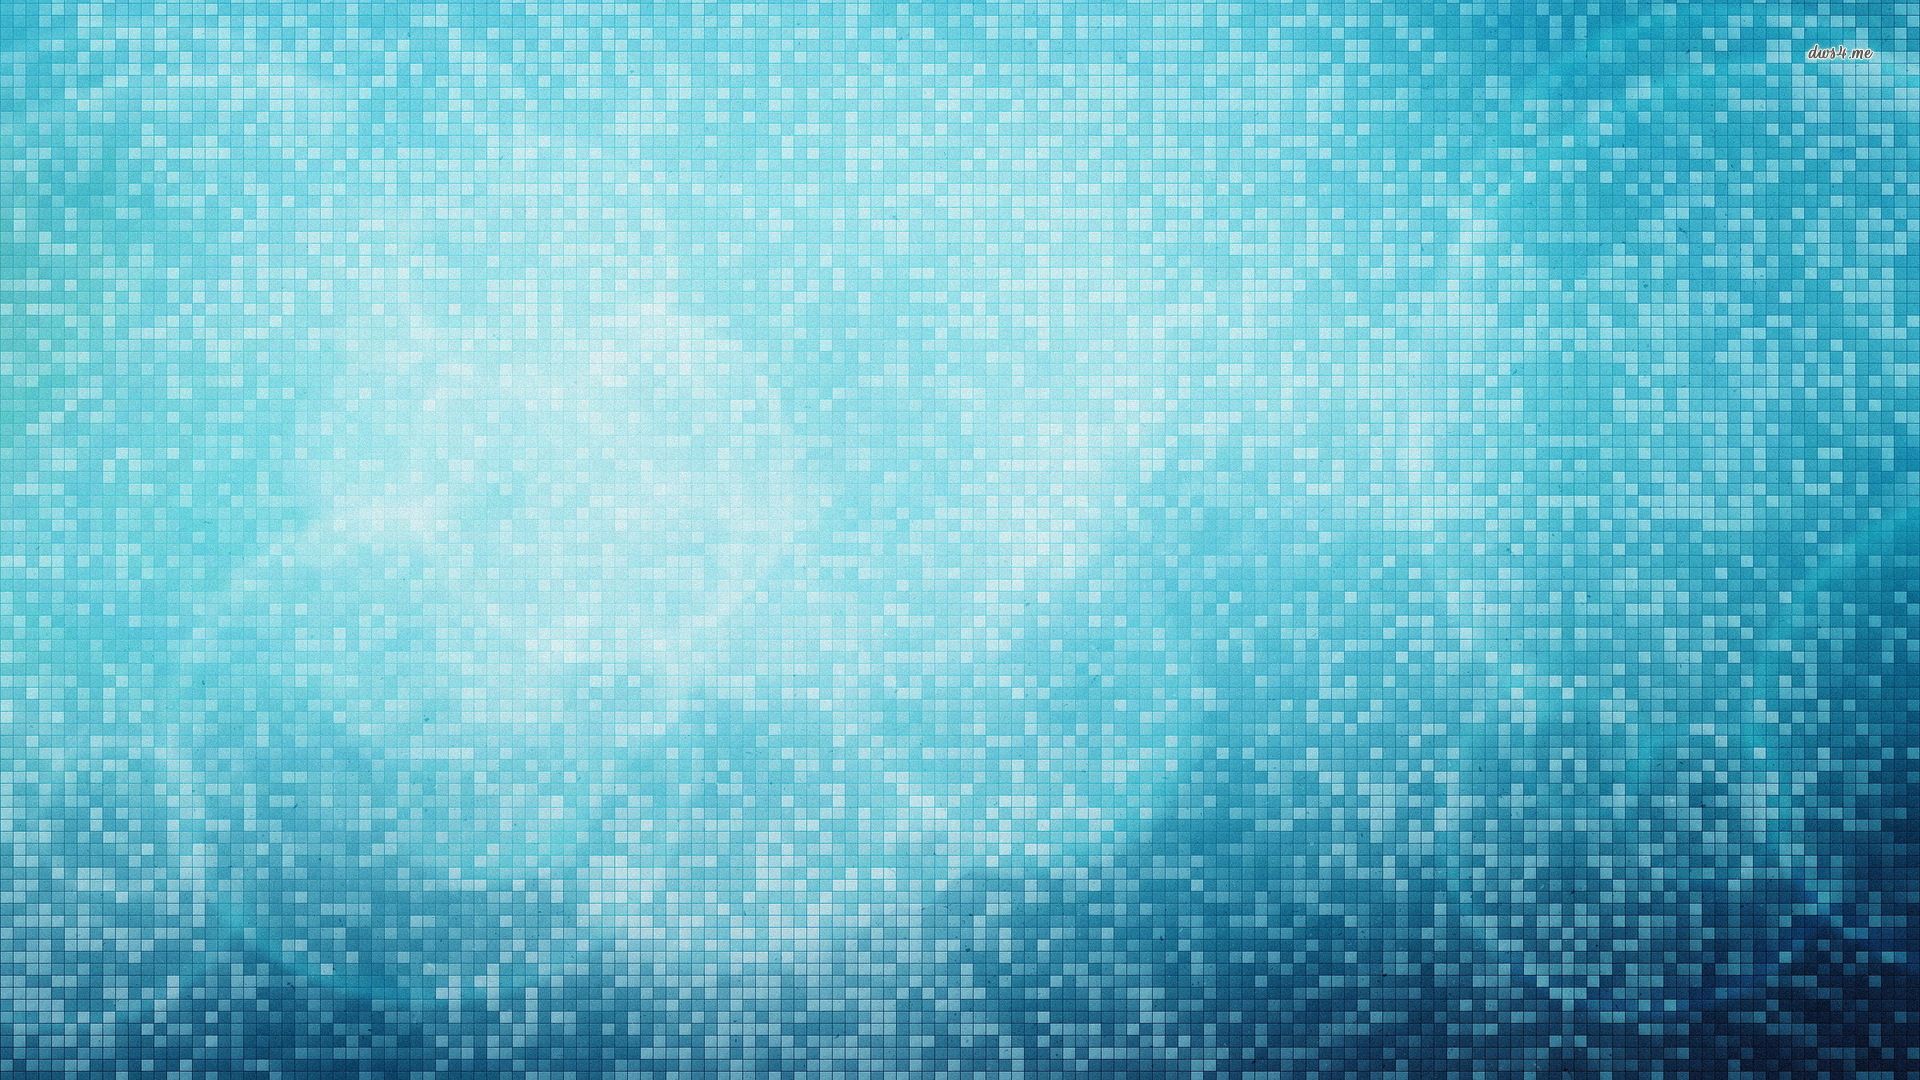 Galería de fondos de pantalla azul claro